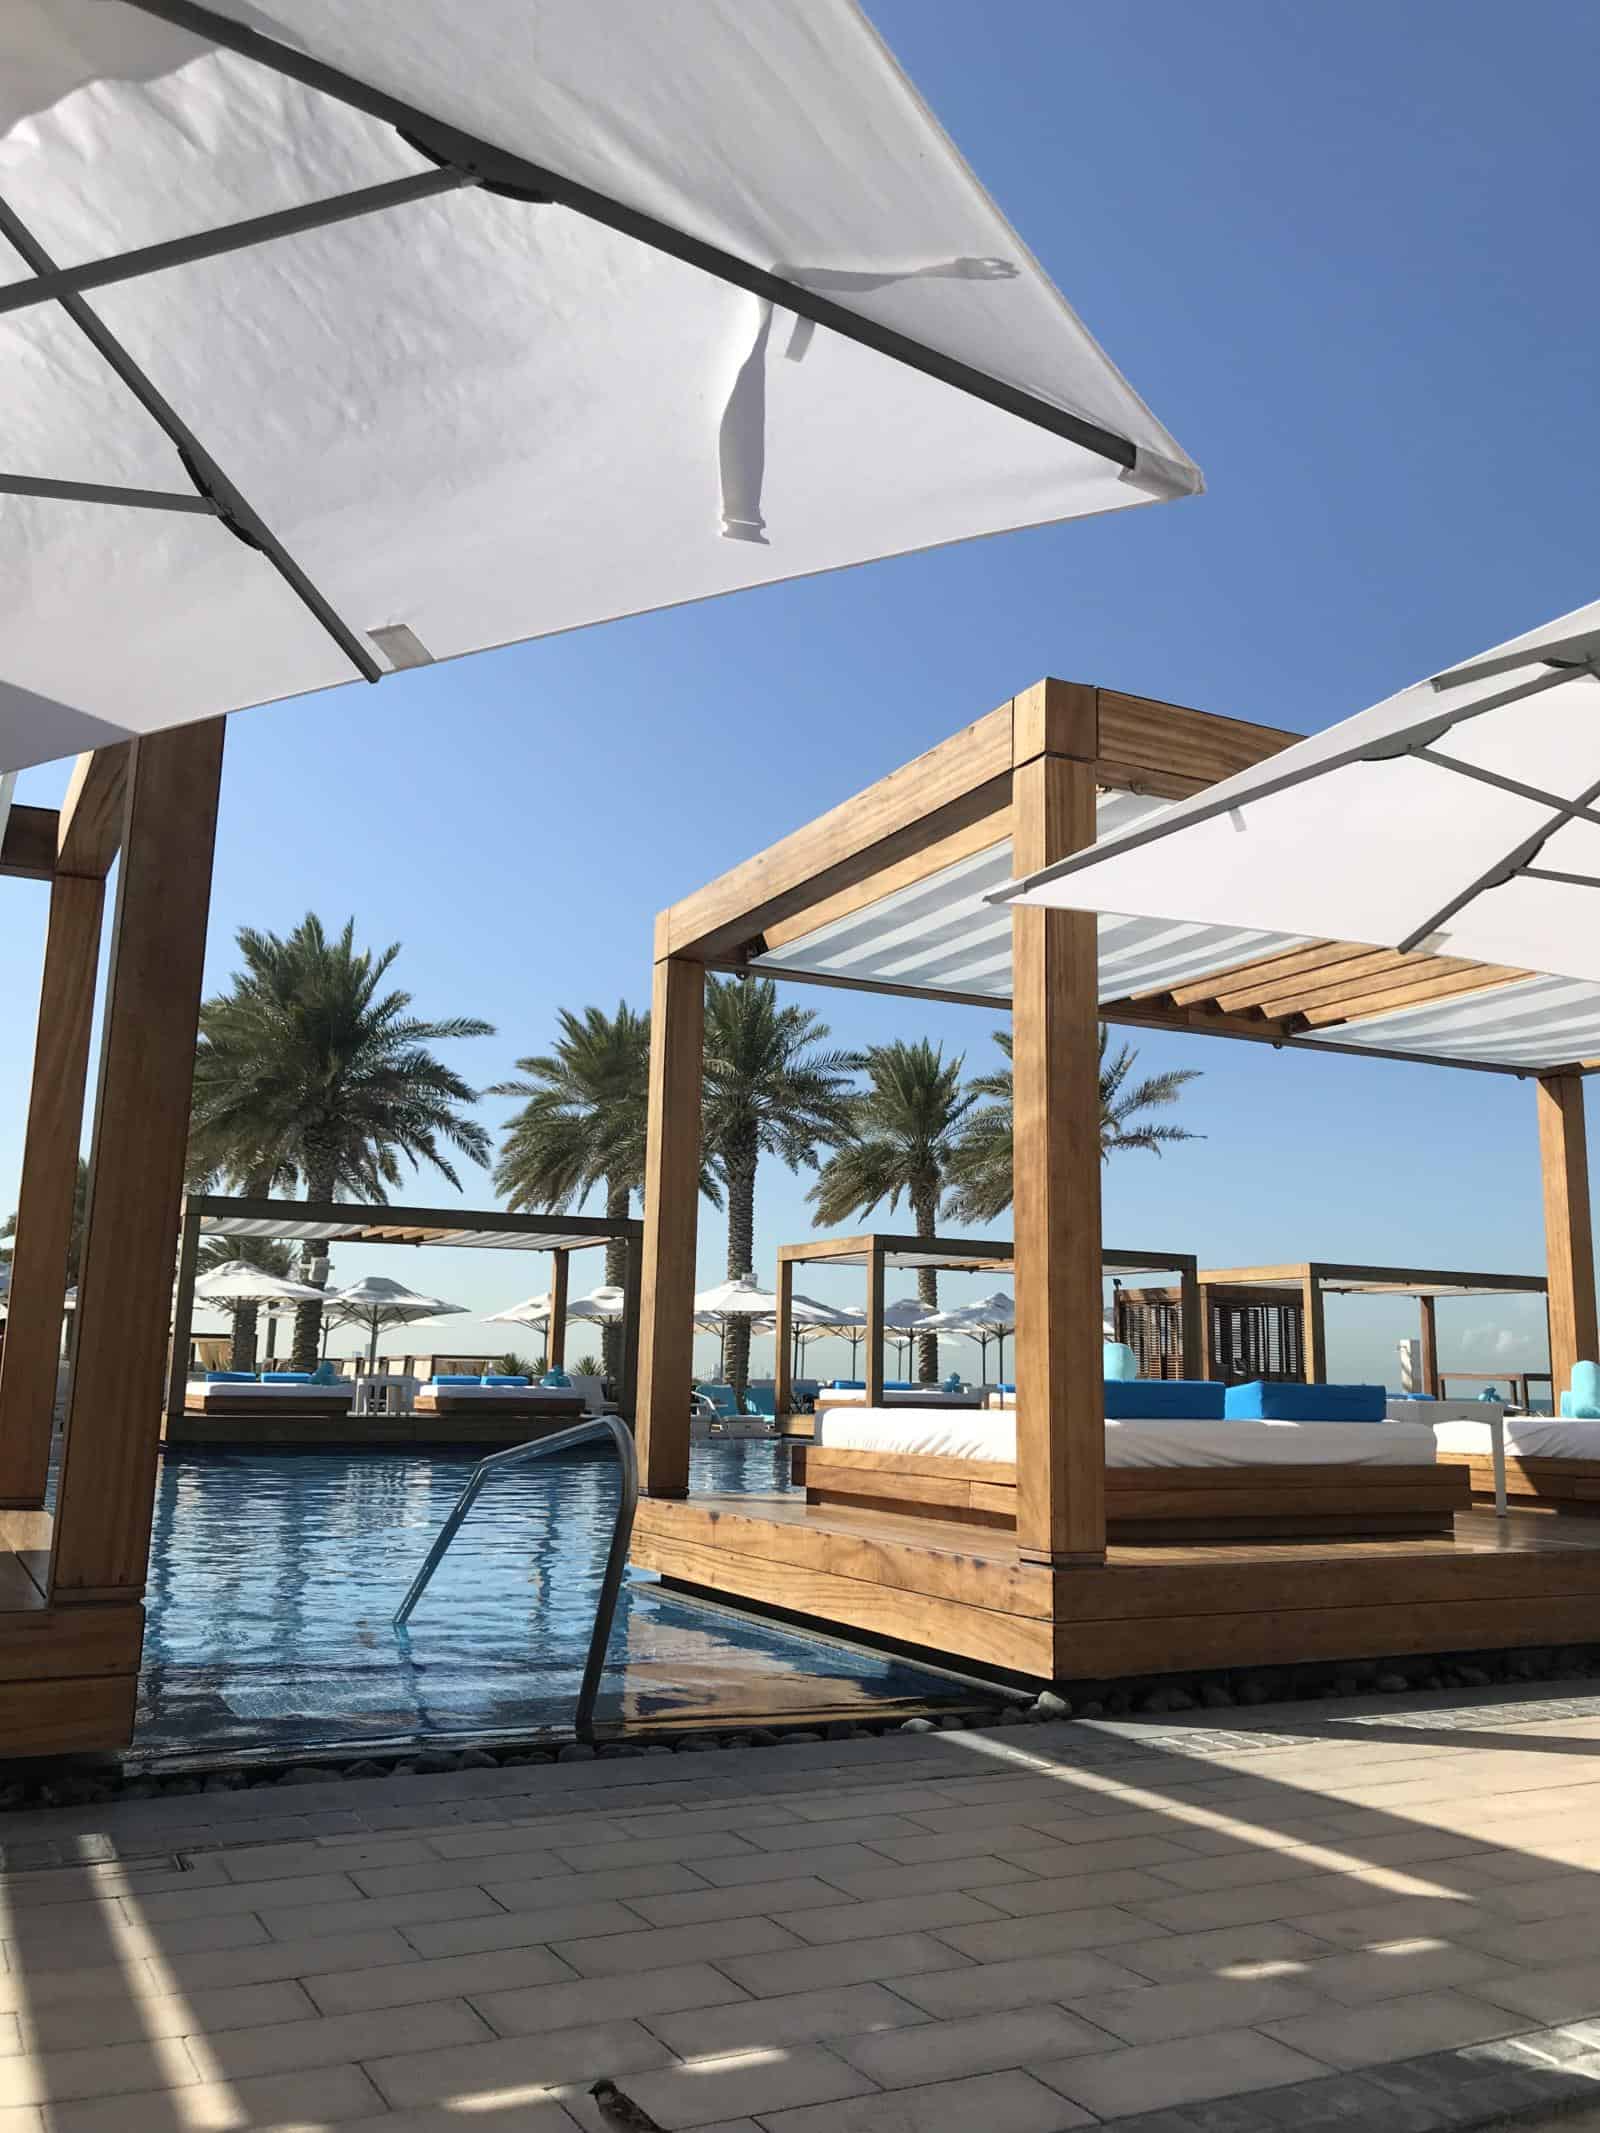 Privilee Review – The Best UAE Beach Club Membership